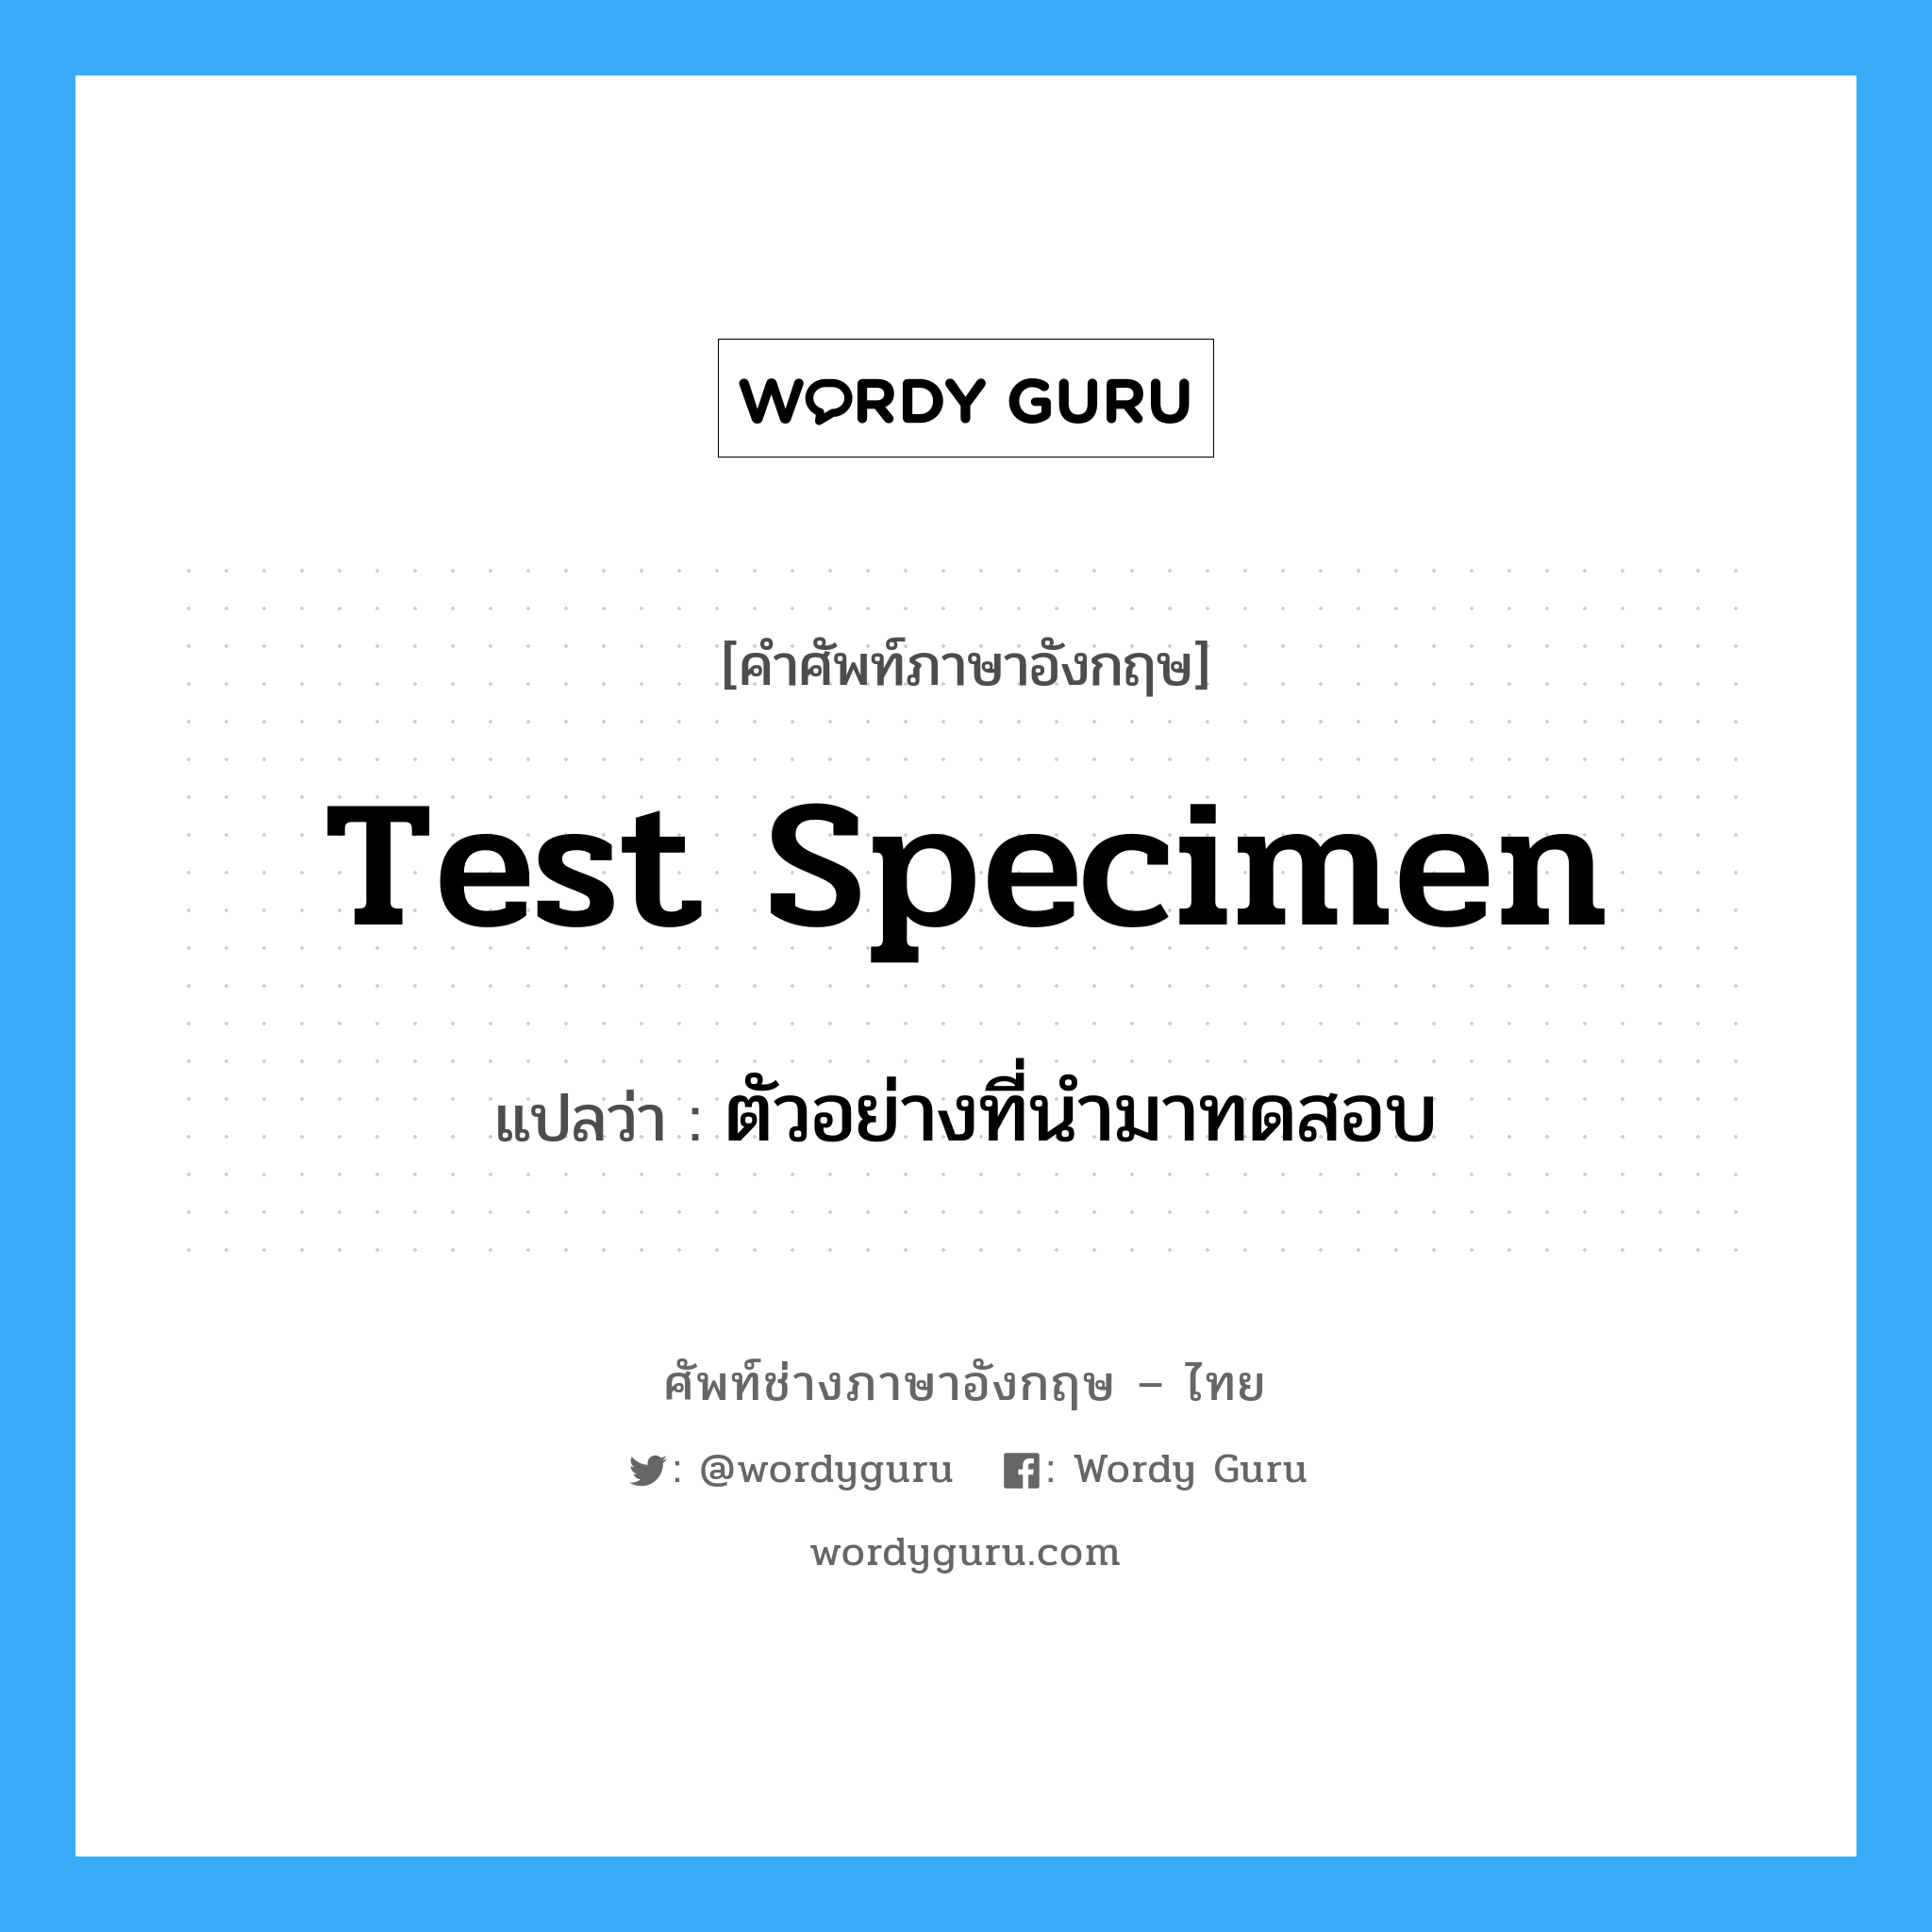 Test Specimen แปลว่า?, คำศัพท์ช่างภาษาอังกฤษ - ไทย Test Specimen คำศัพท์ภาษาอังกฤษ Test Specimen แปลว่า ตัวอย่างที่นำมาทดสอบ